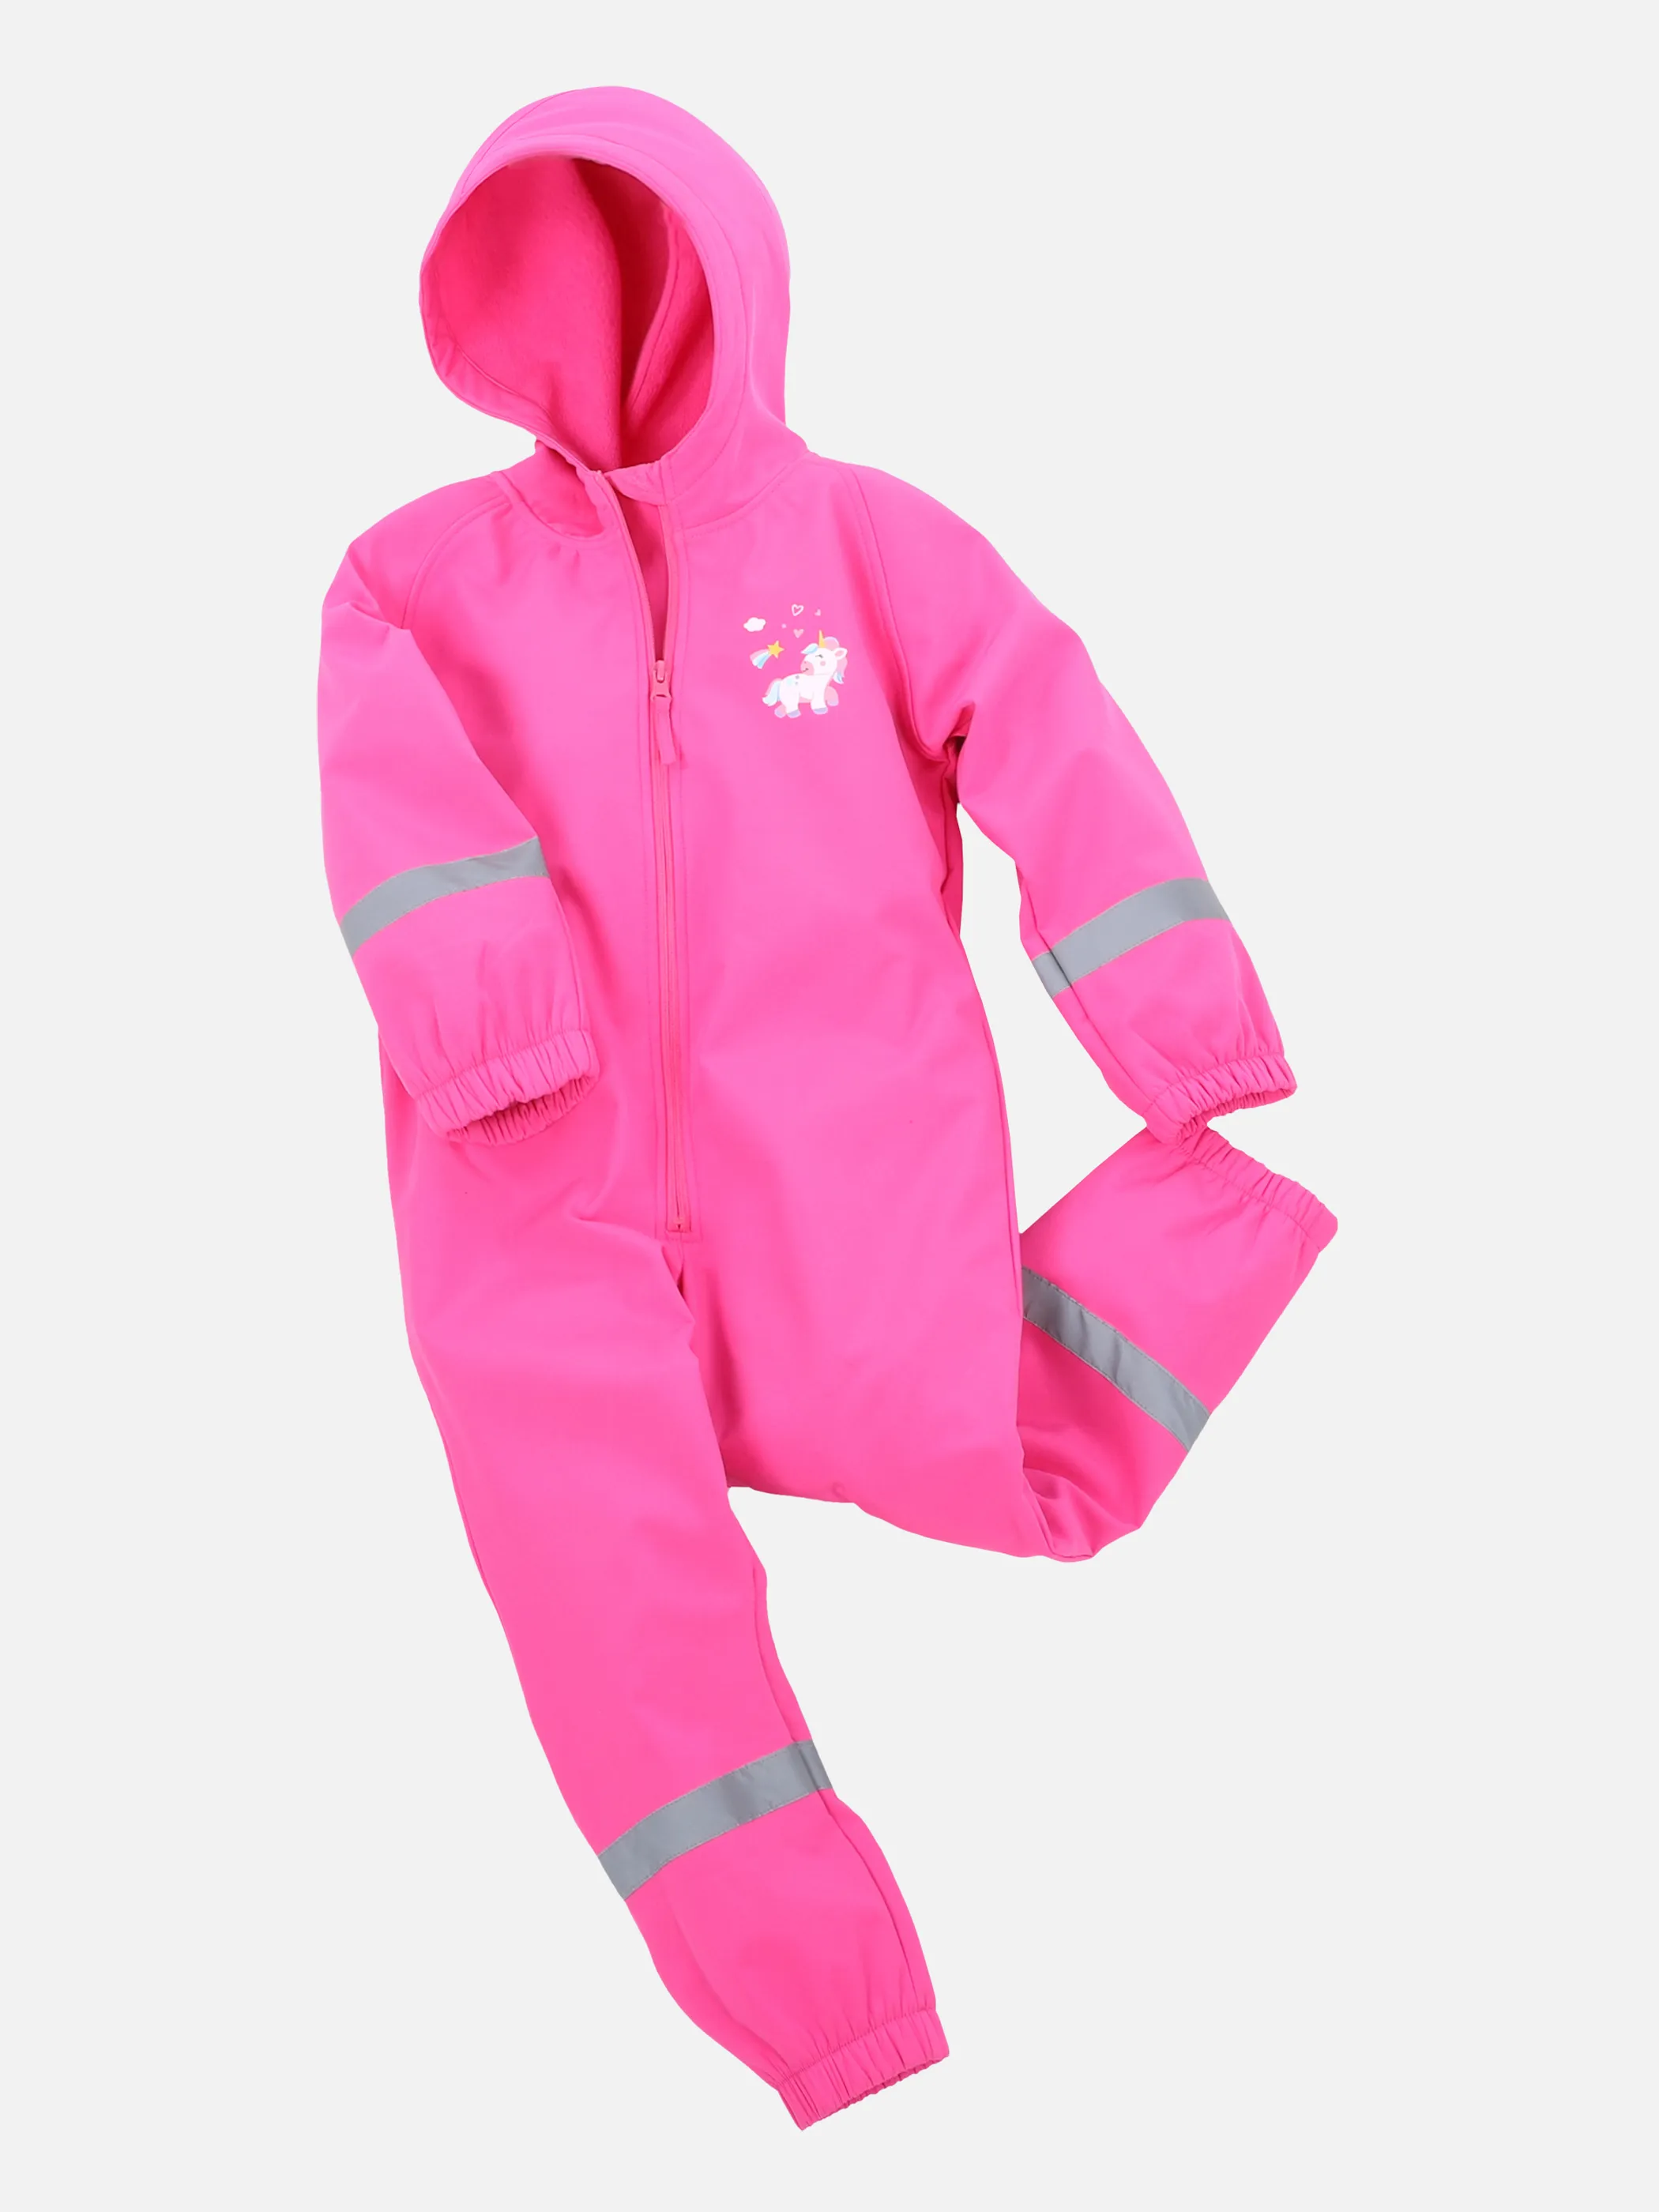 Kinder Regenoverall mit | PINK | 862272-pink noSize Kapuze 